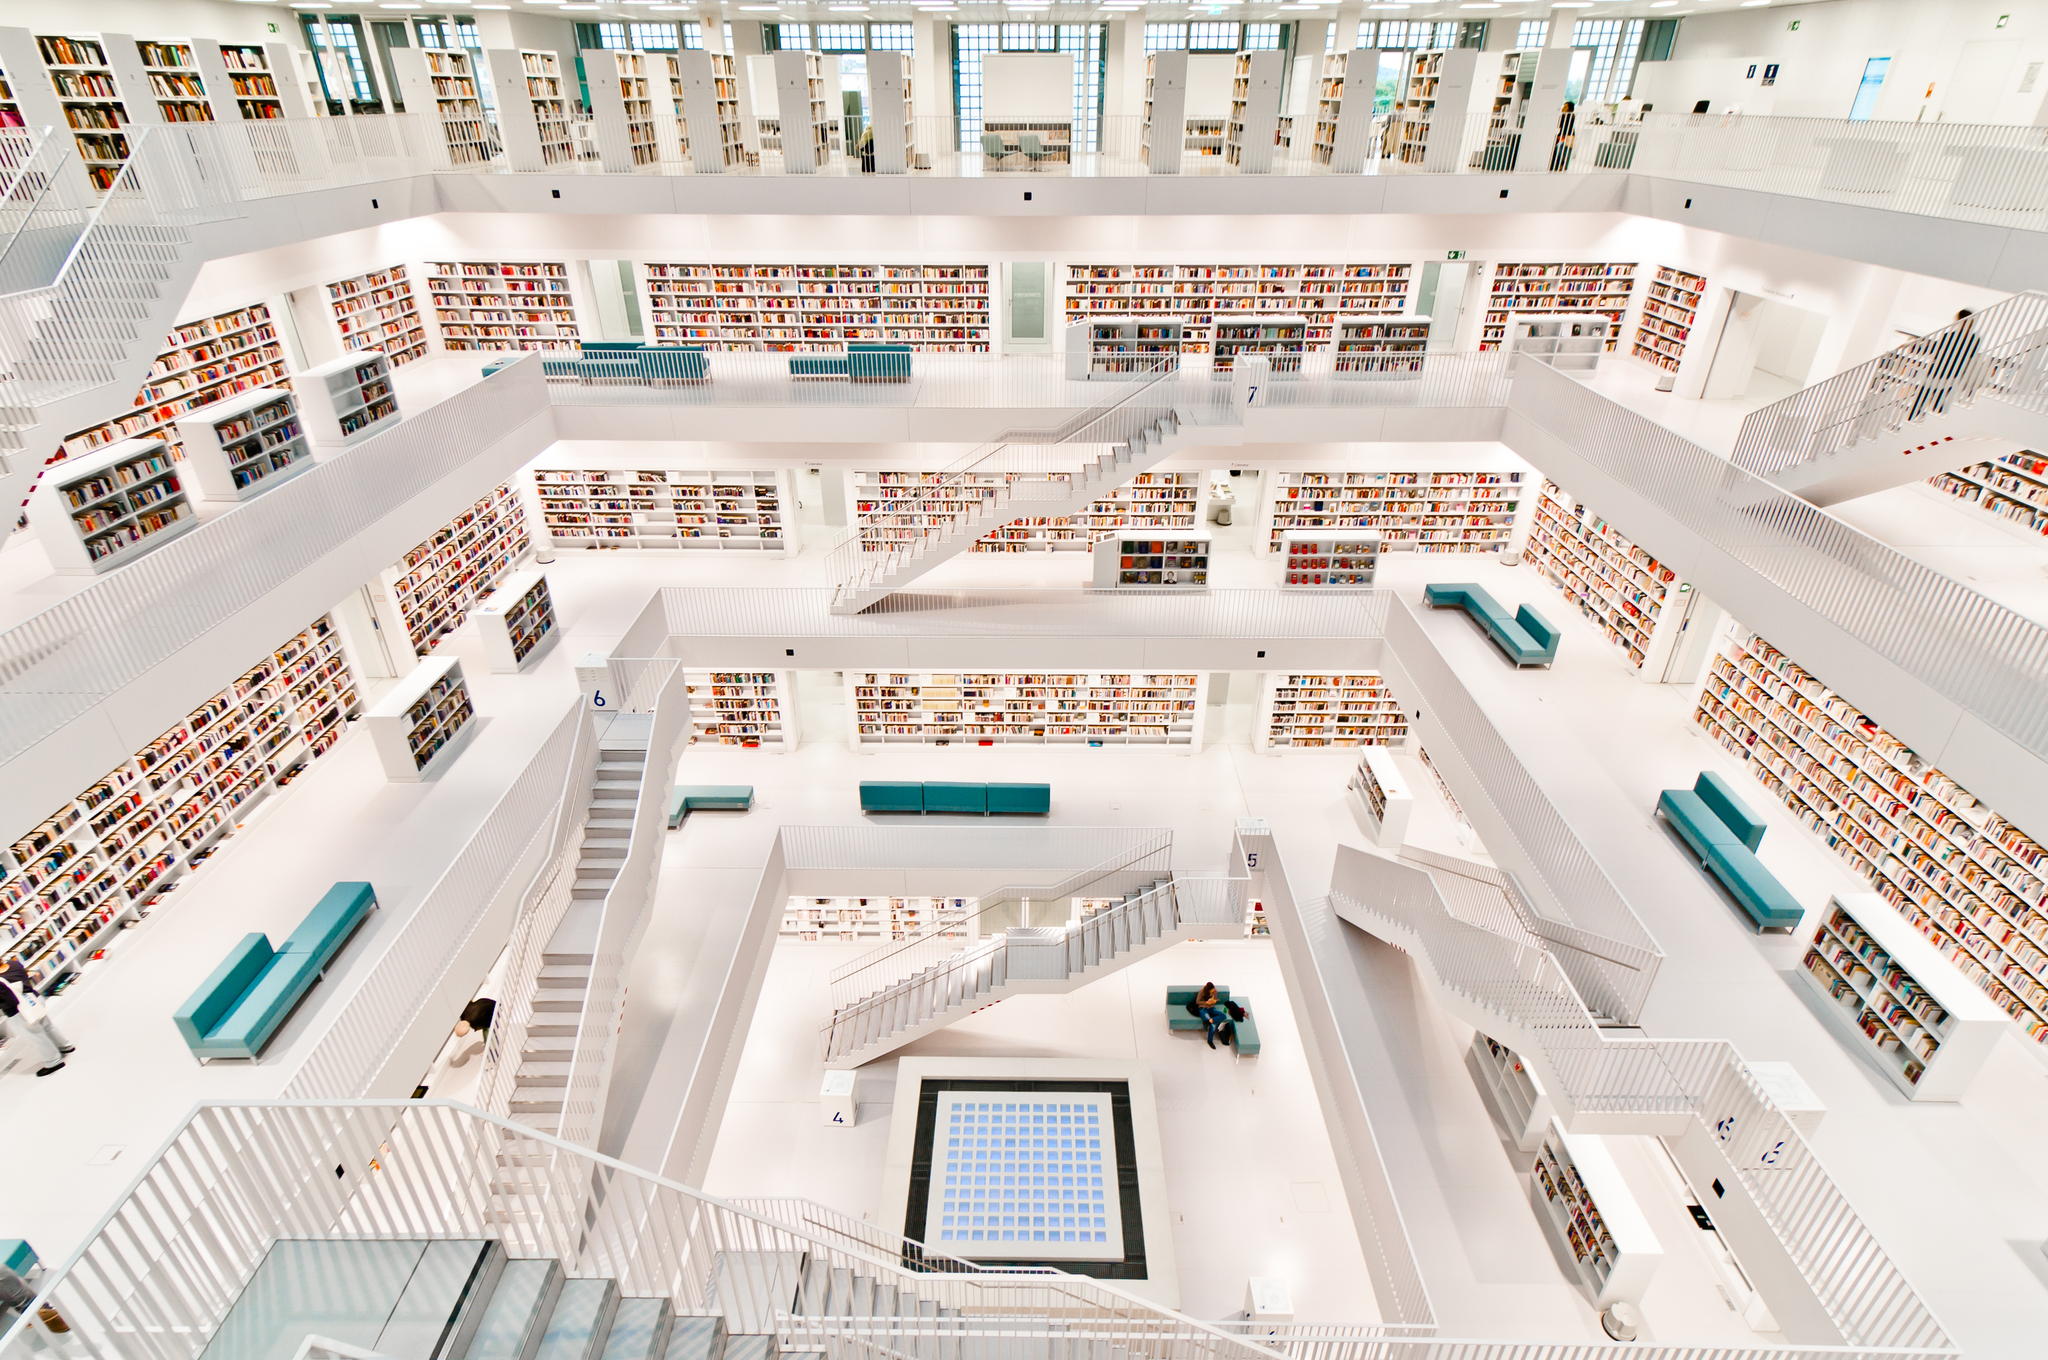 Stuttgart public library - Imgur